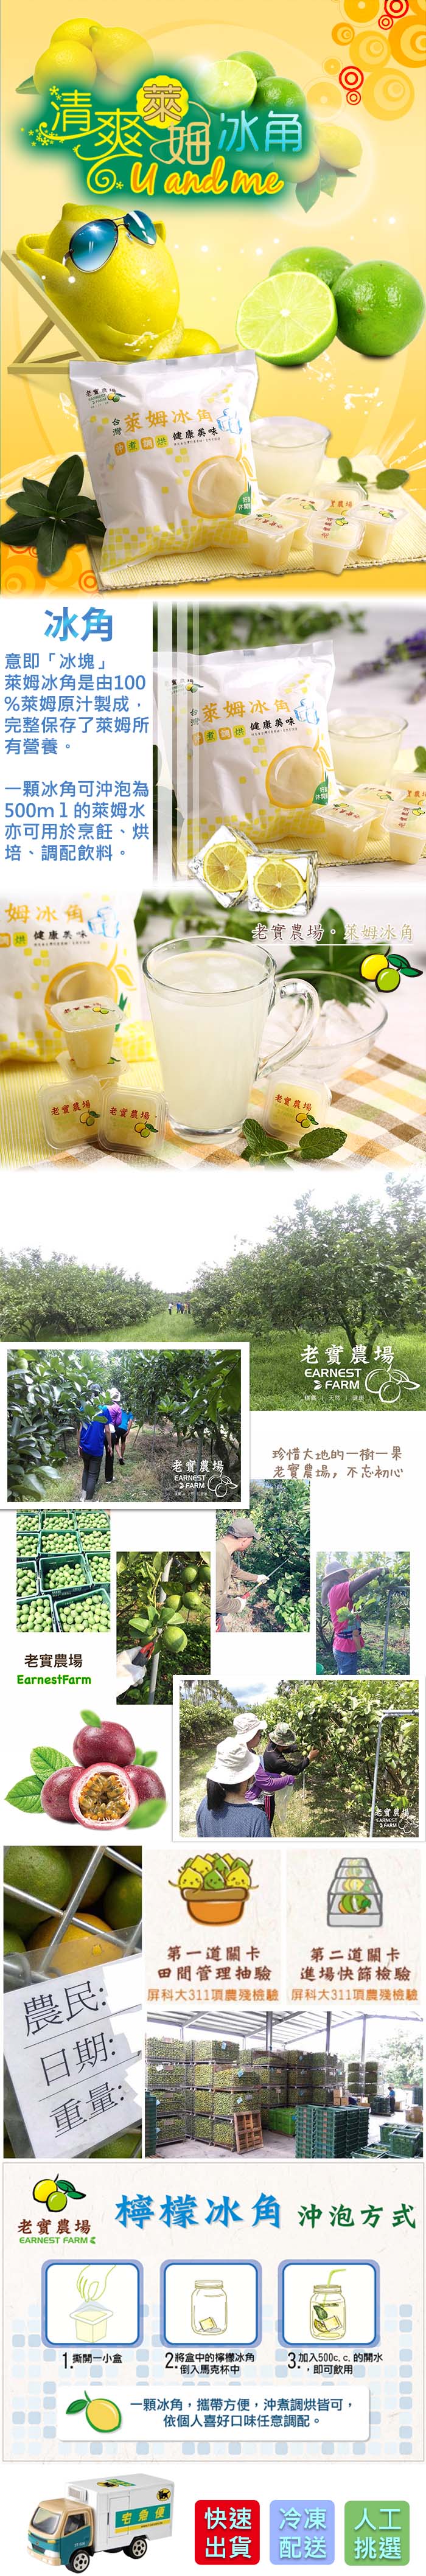 【老實農場】檸檬冰角/萊姆冰角(28gx10入/袋) 檸檬原汁/果汁